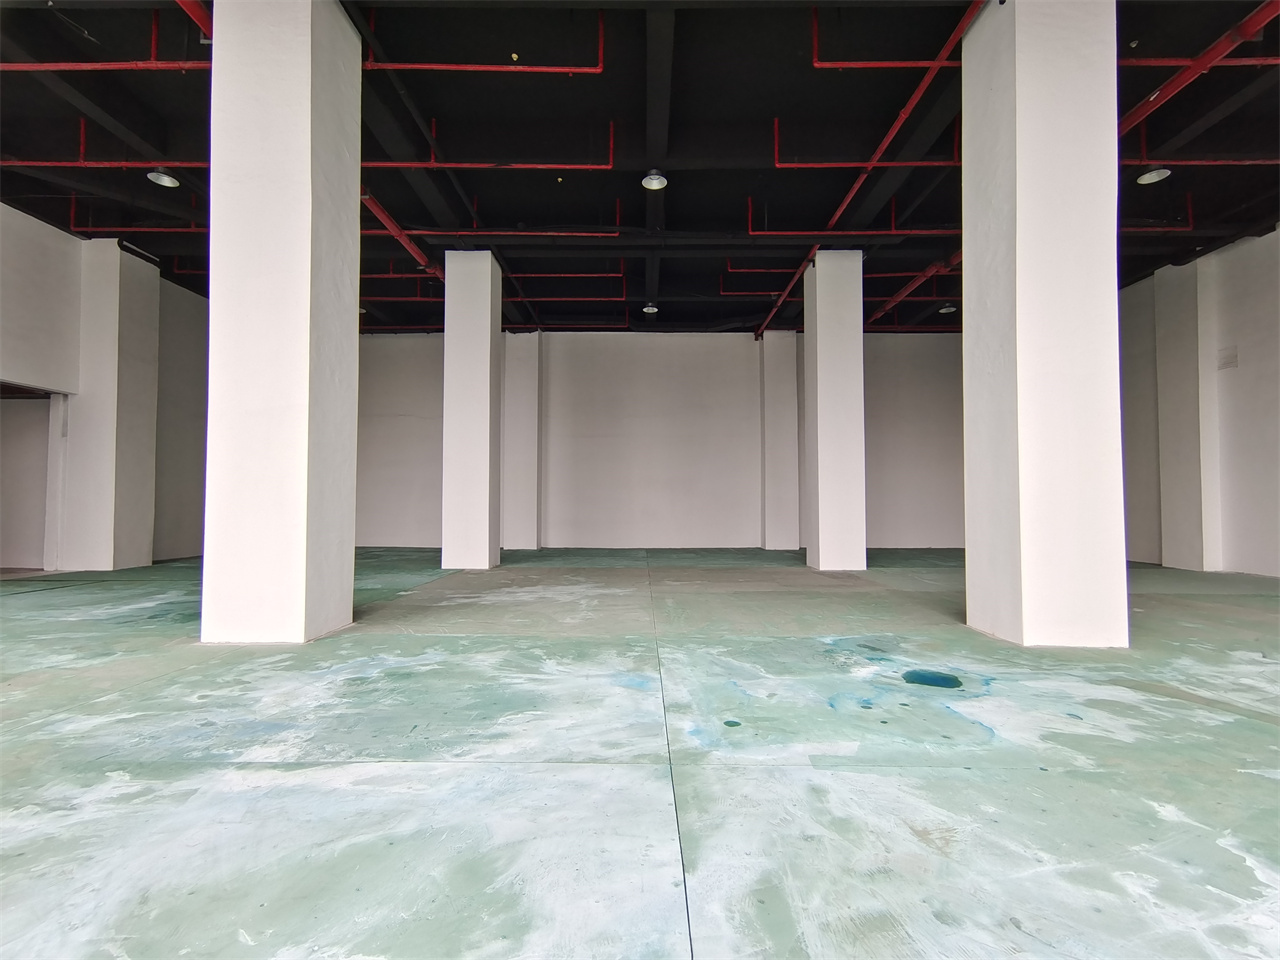 浦东地铁口电商产业园一楼展厅招租层高9米摄影基地